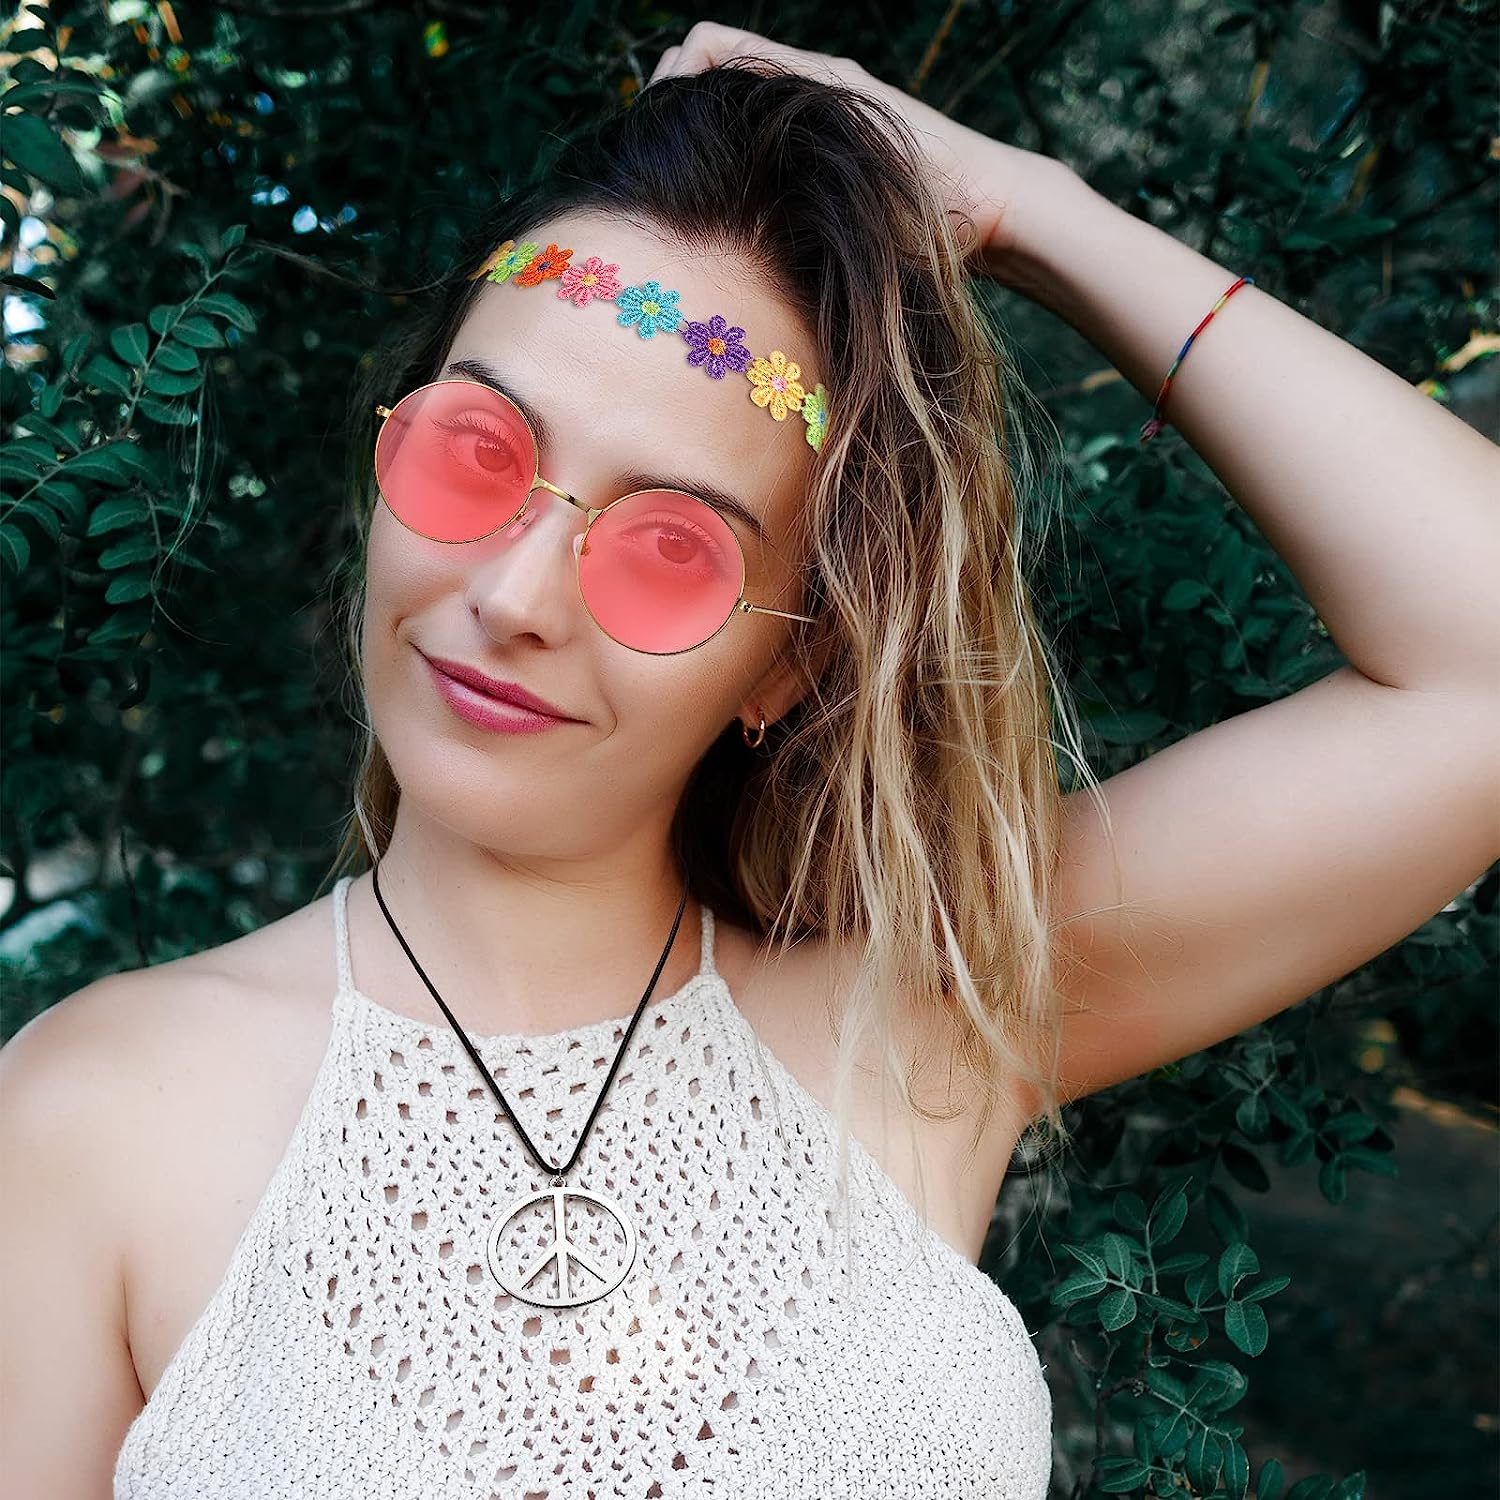 TUPARKA Juego de 60 piezas de accesorios de disfraz de gafas hippie que  incluye diademas multicolor de margaritas, gafas de sol hippie redondas y